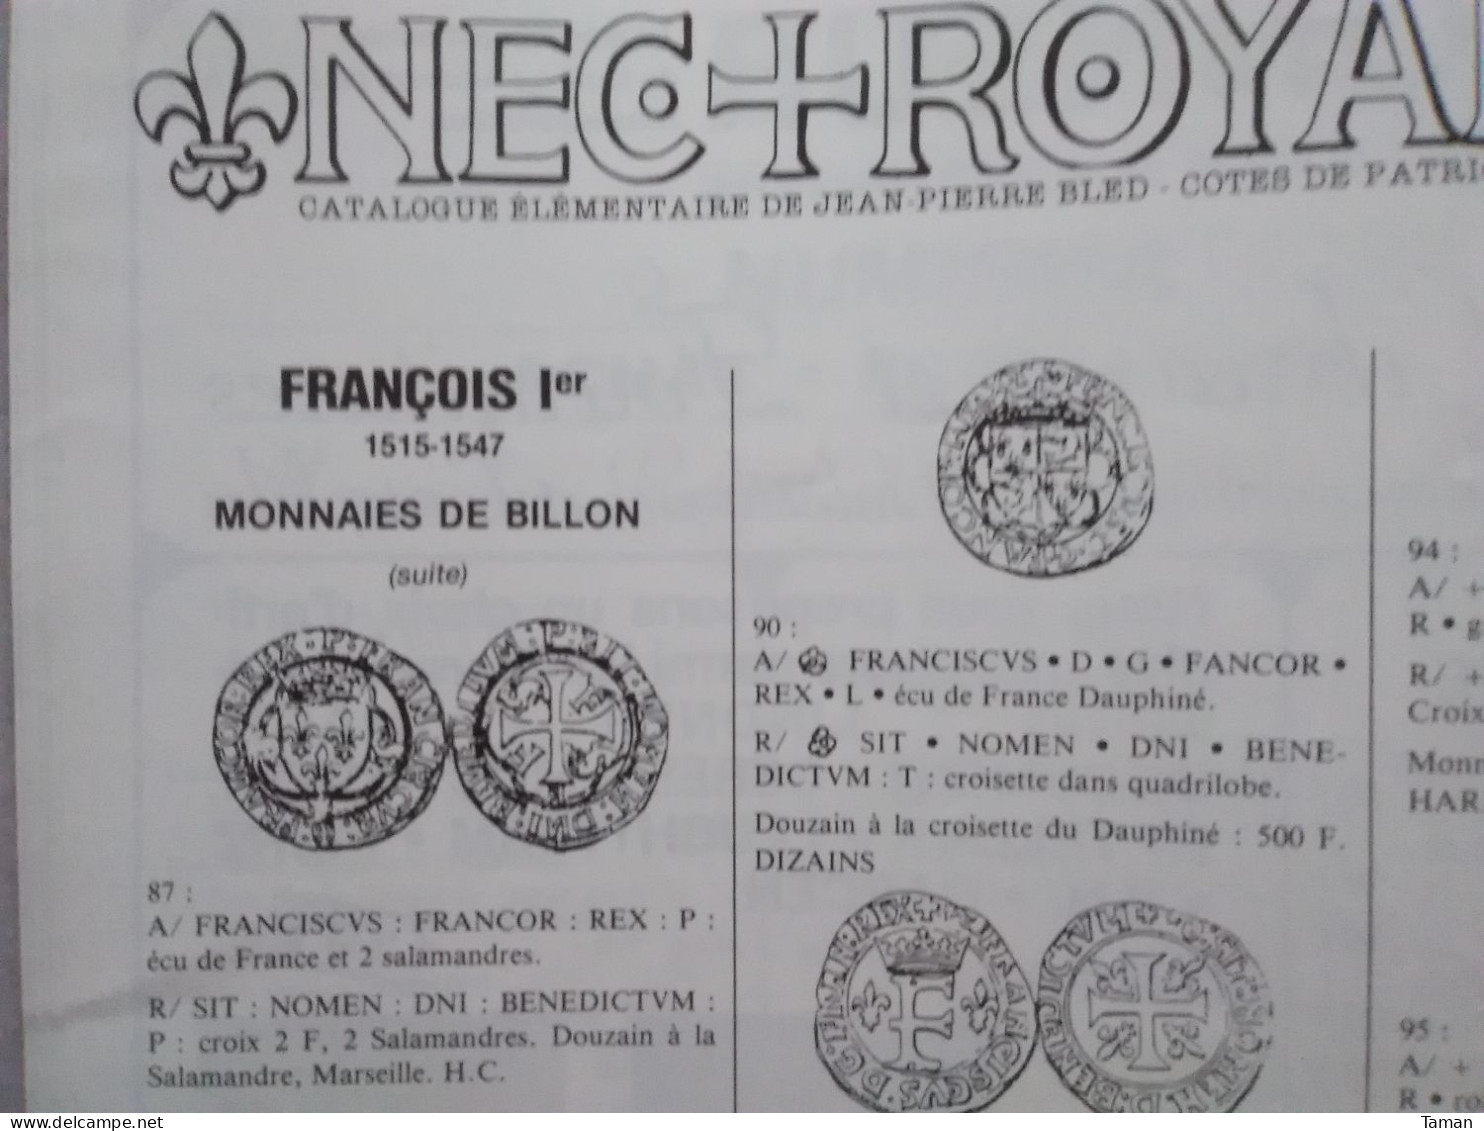 Numismatique & change - Rome Postume - 5 F Louis Philippe - Grèce antique - Monnaies royales - Belgique